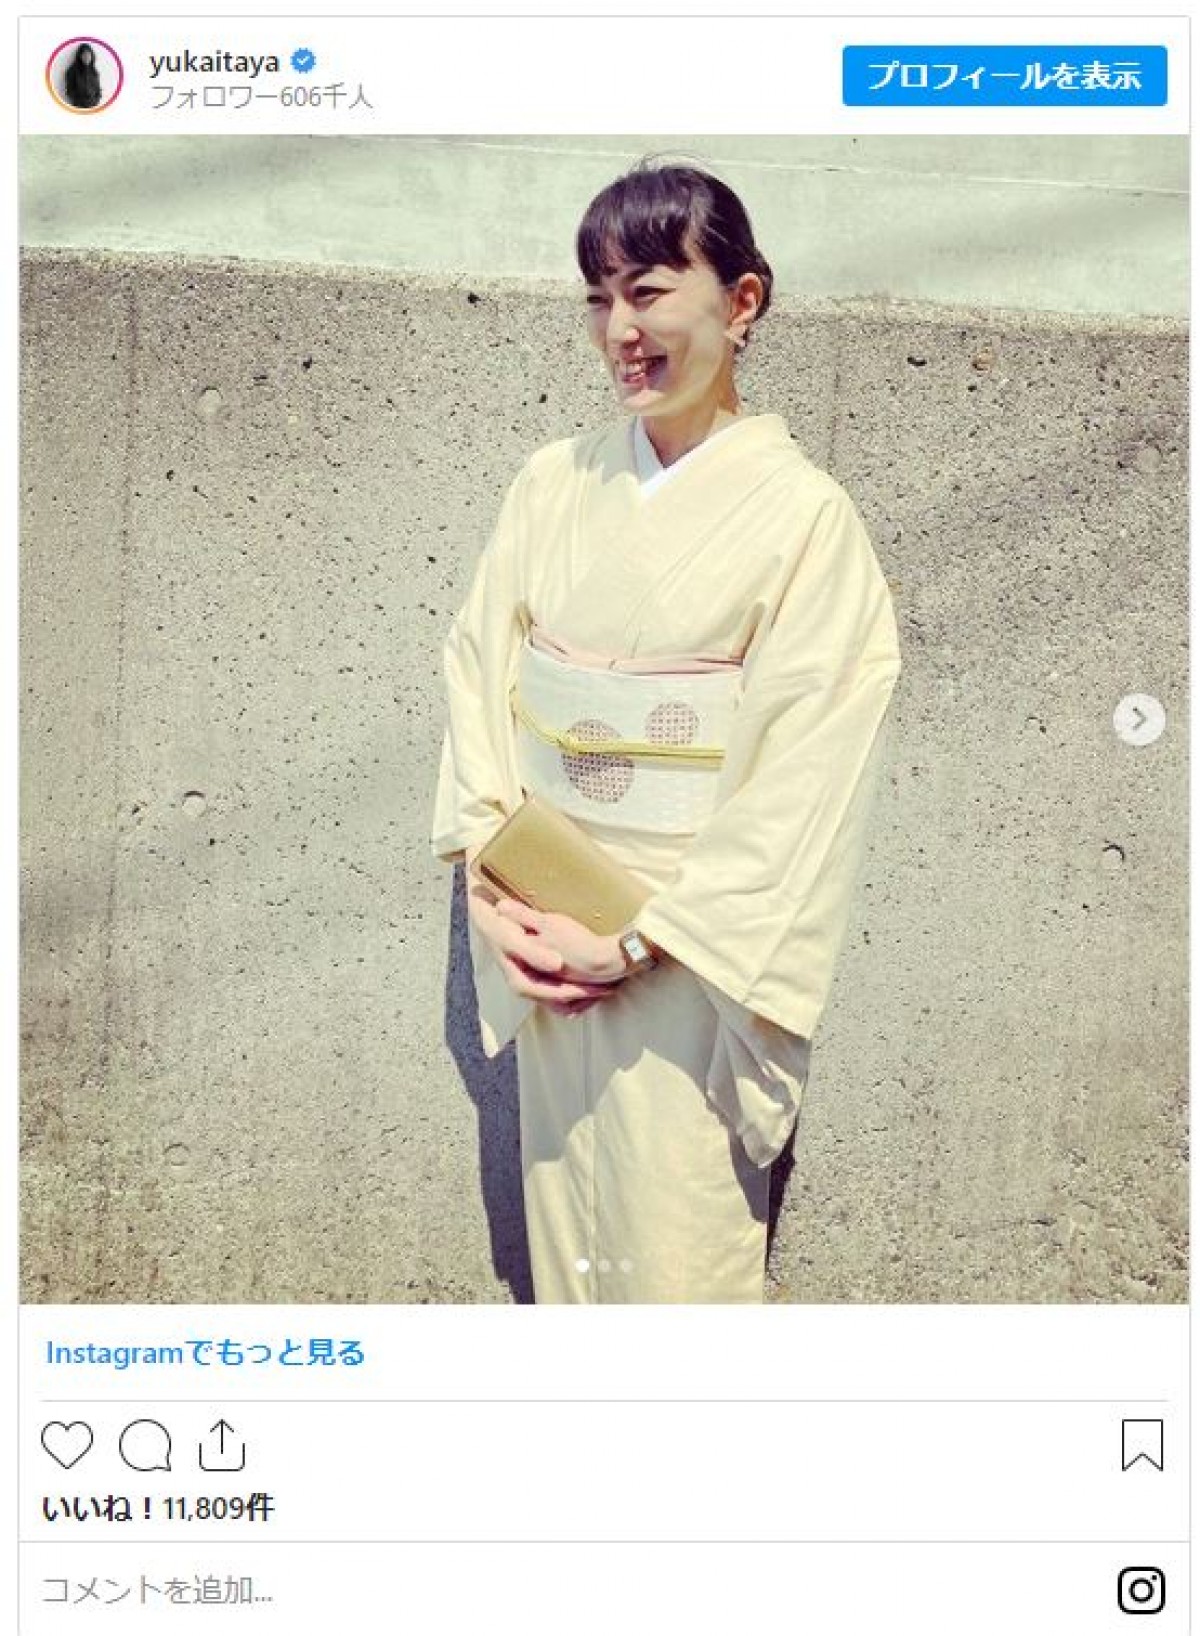 板谷由夏、息子の入学式で麗しい和服姿 「素敵」「お似合い」の声